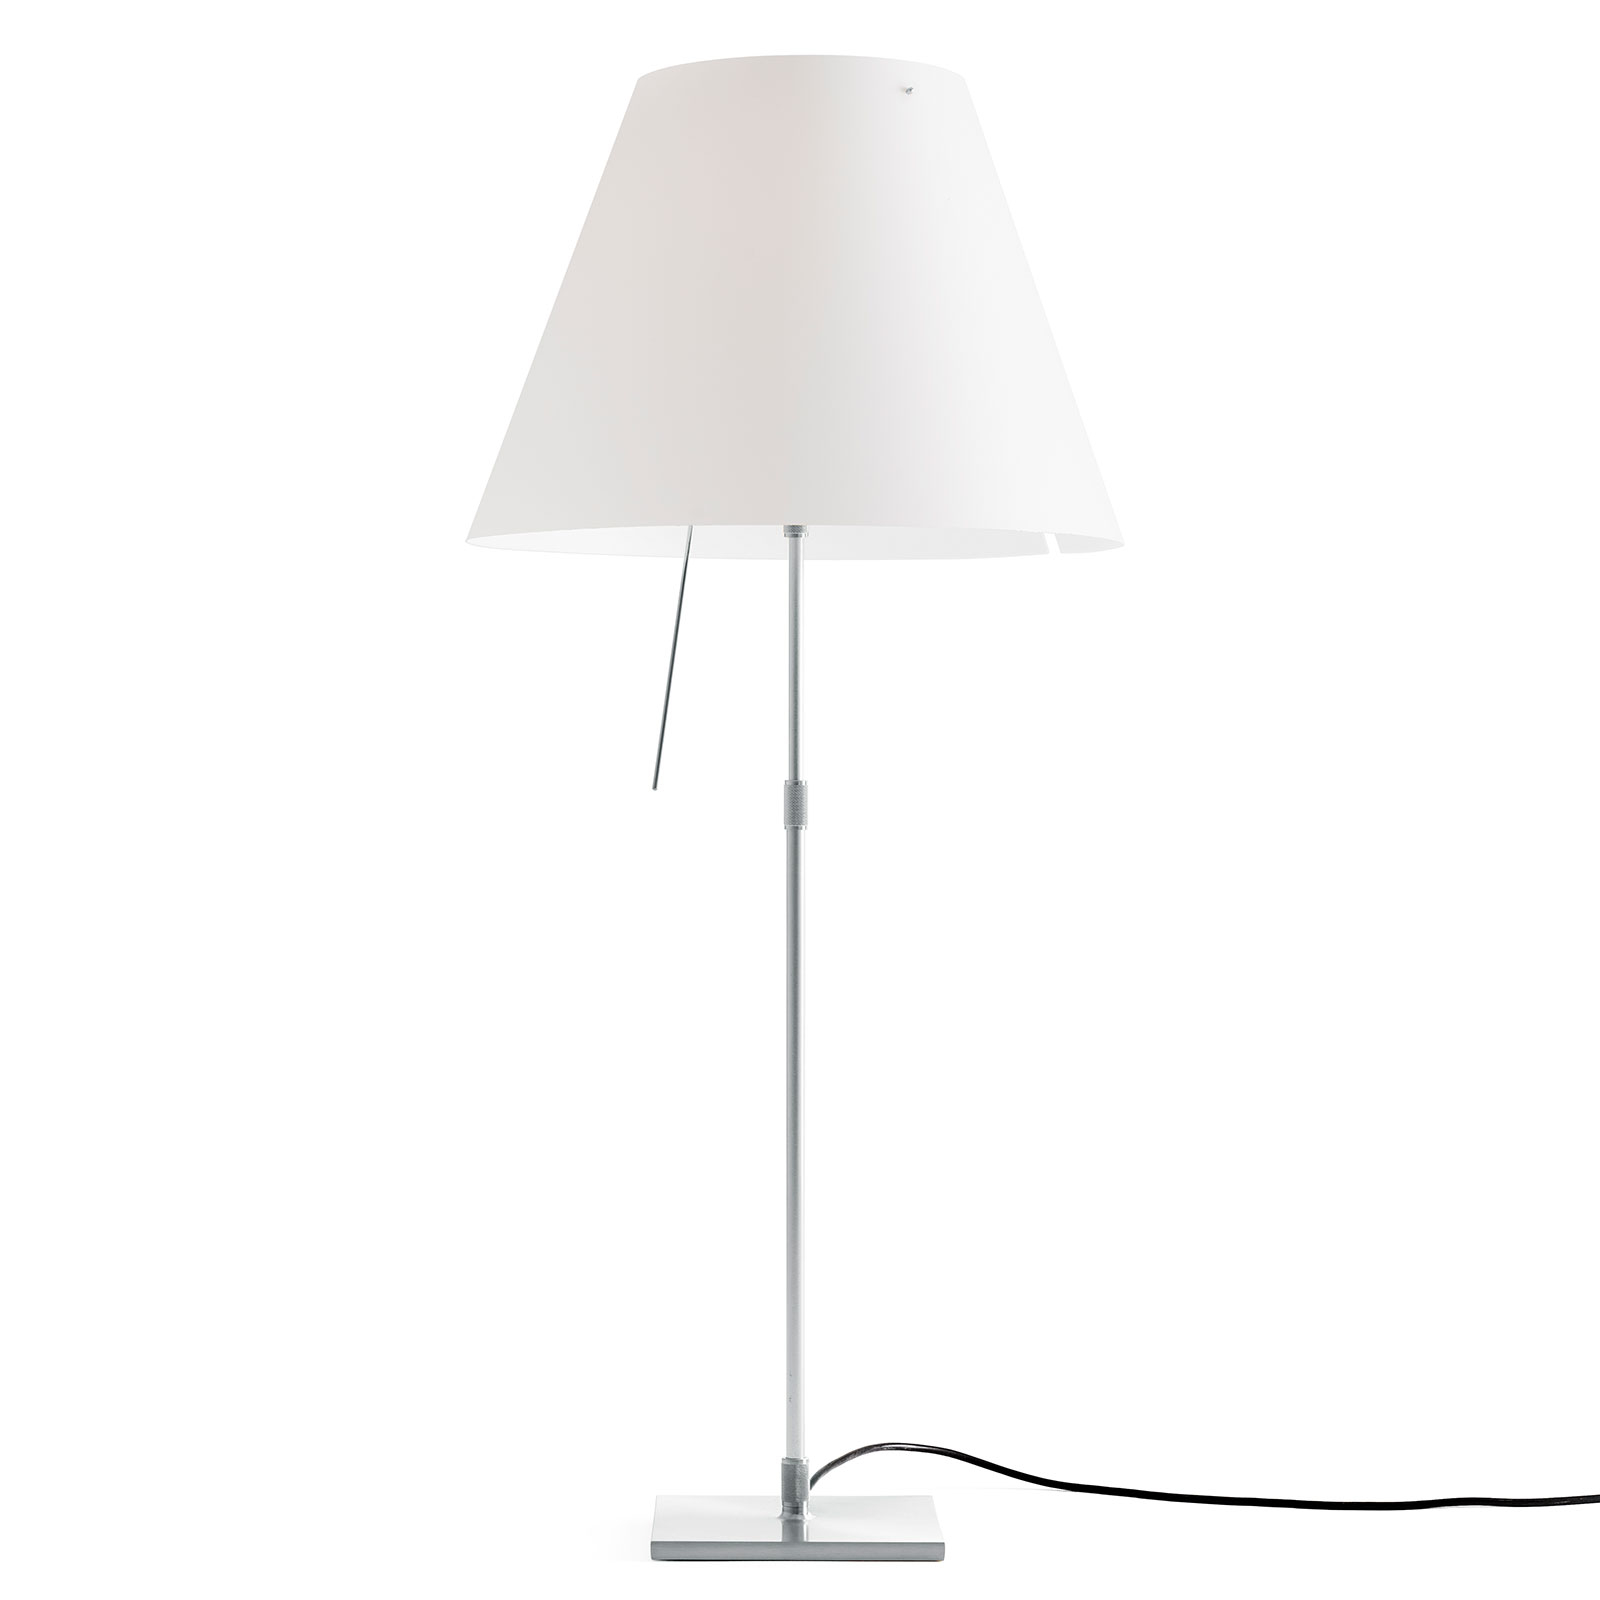 Luceplan Costanza lampe table alu blanc diffuseur